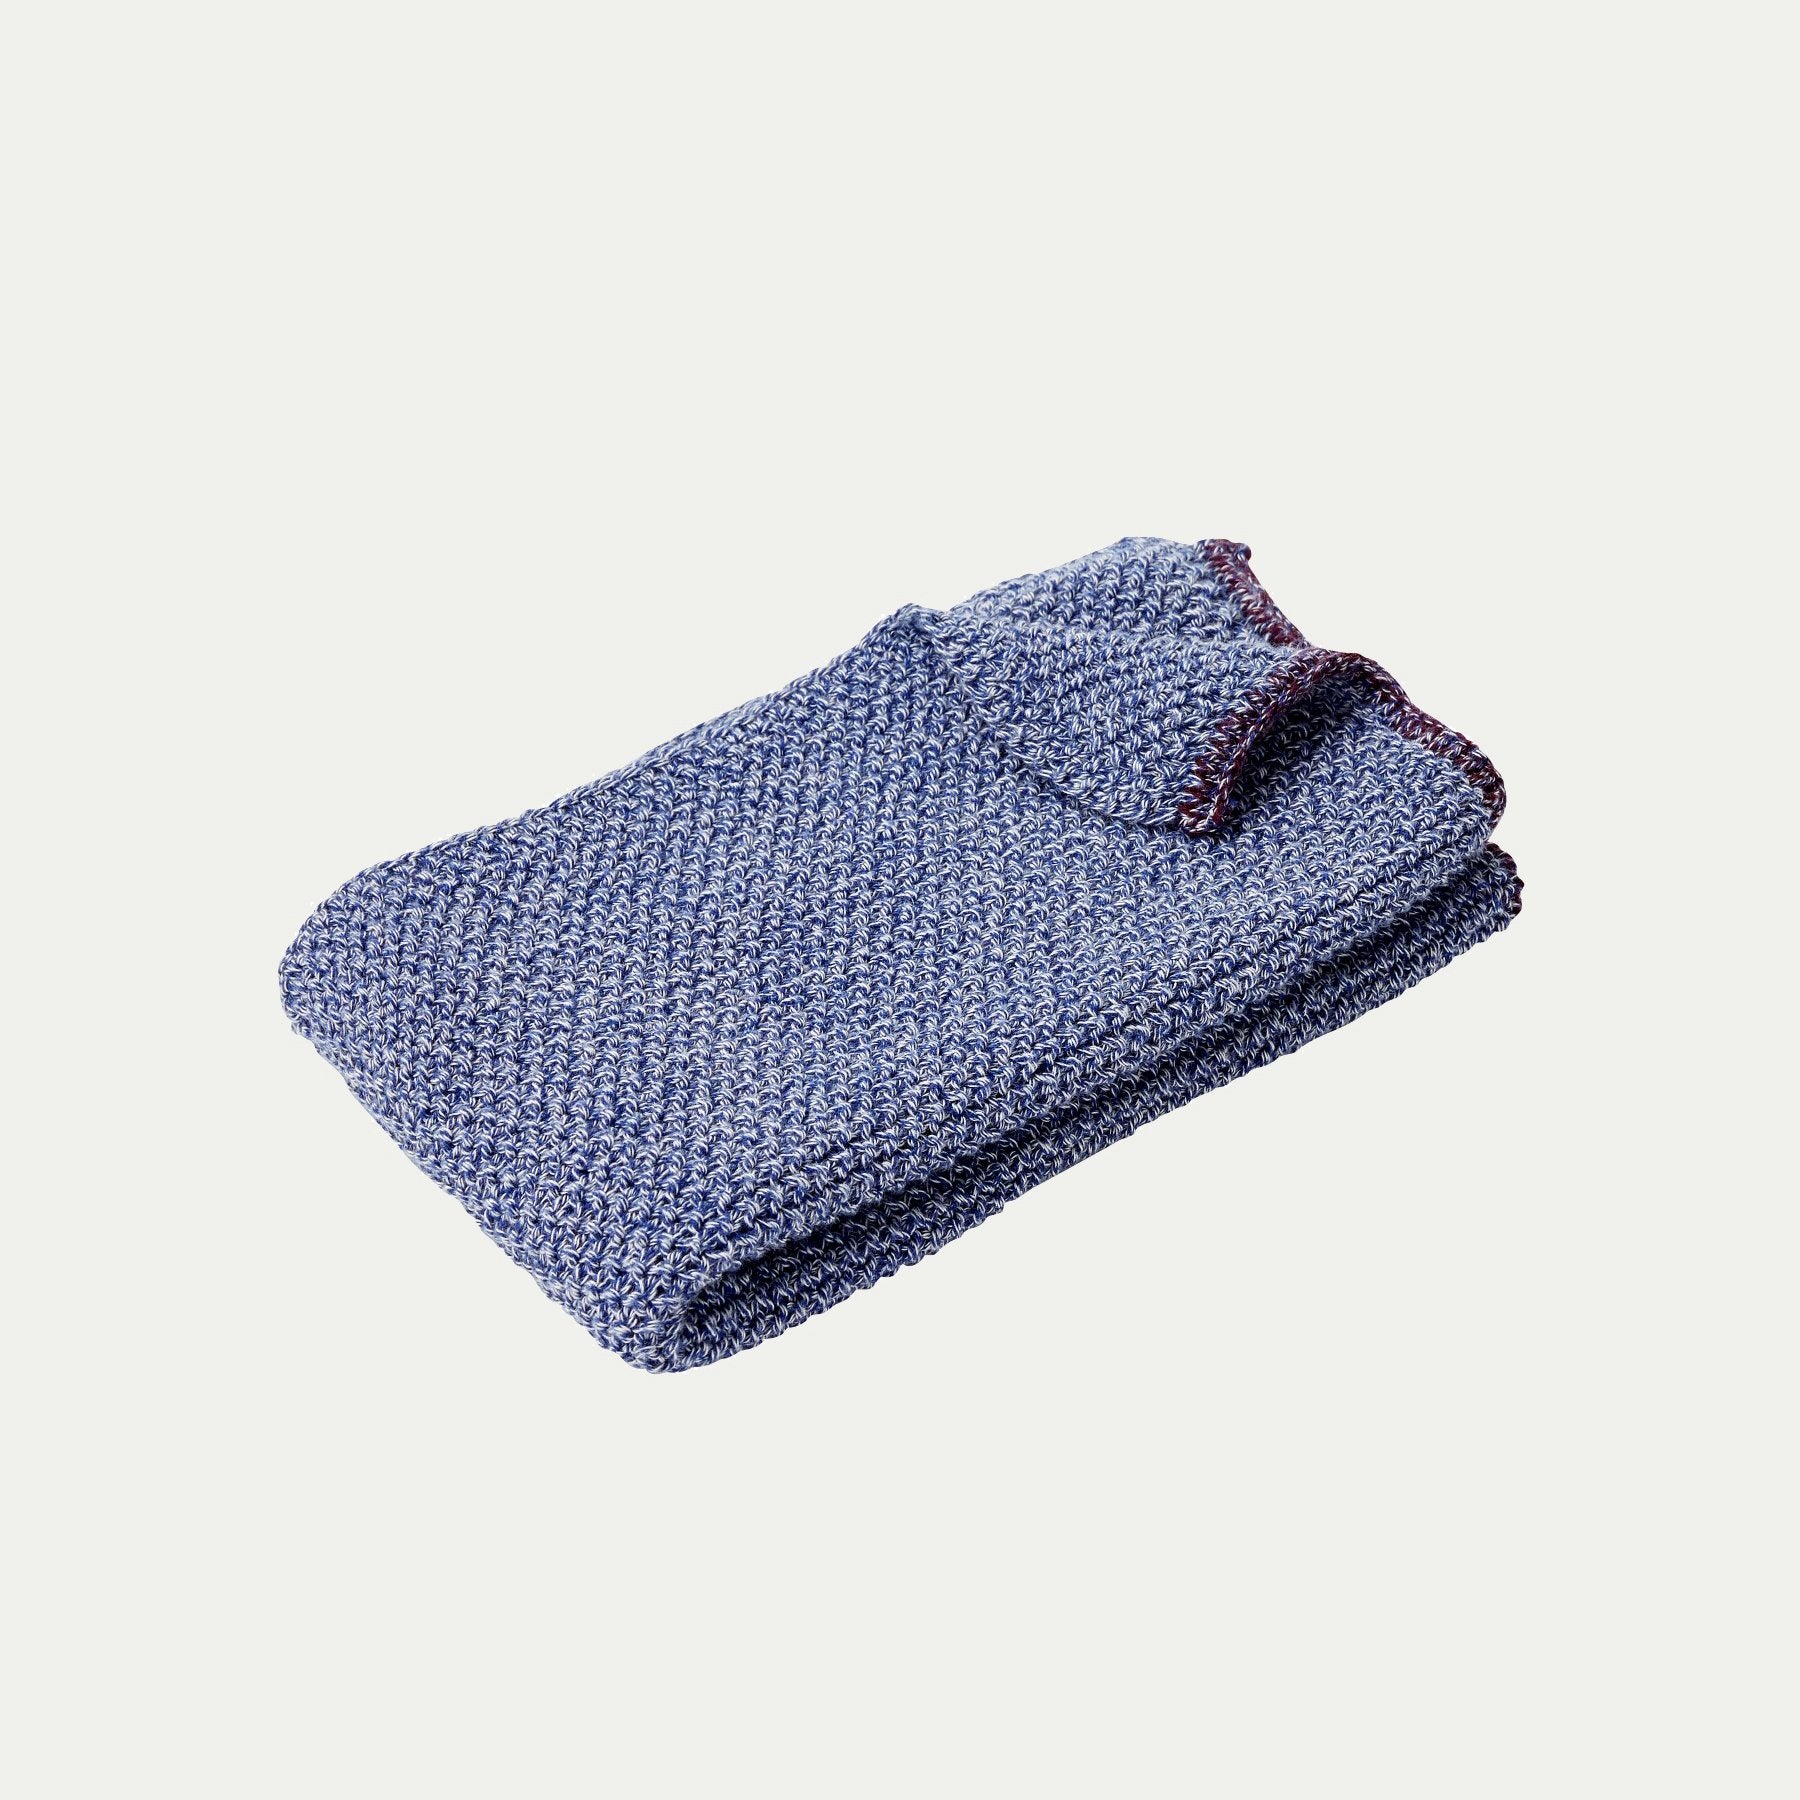 Hubsch Interior Scandi designer tea towel in blue and purple cotton knit on a white background